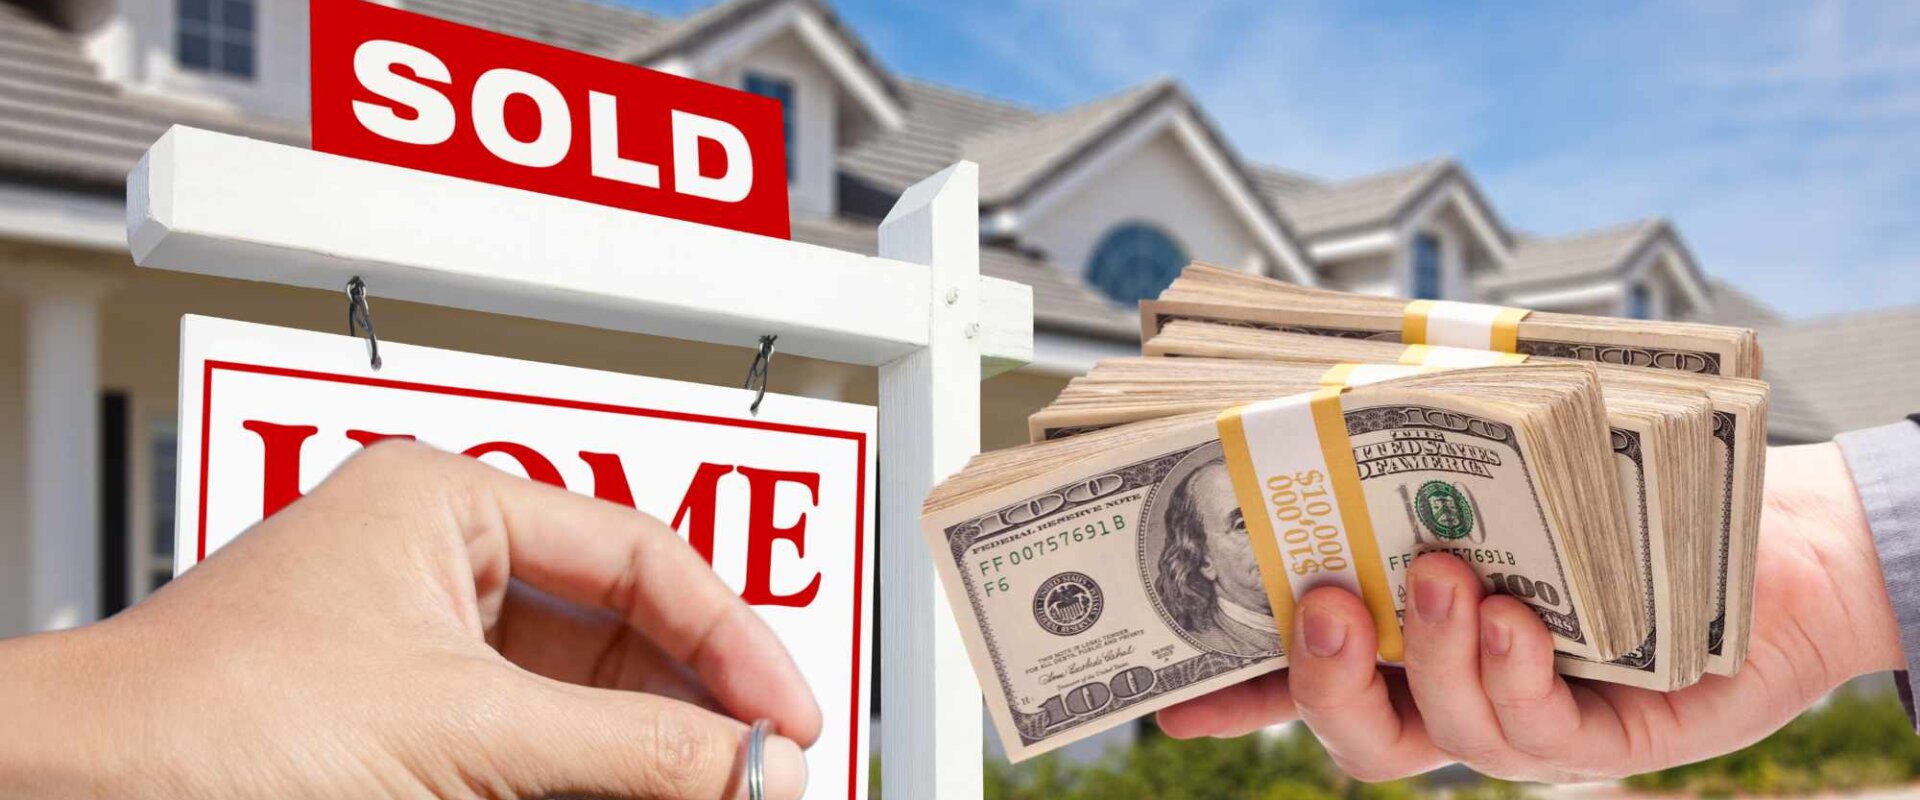 NLS Homes - we buy house in cash in cash